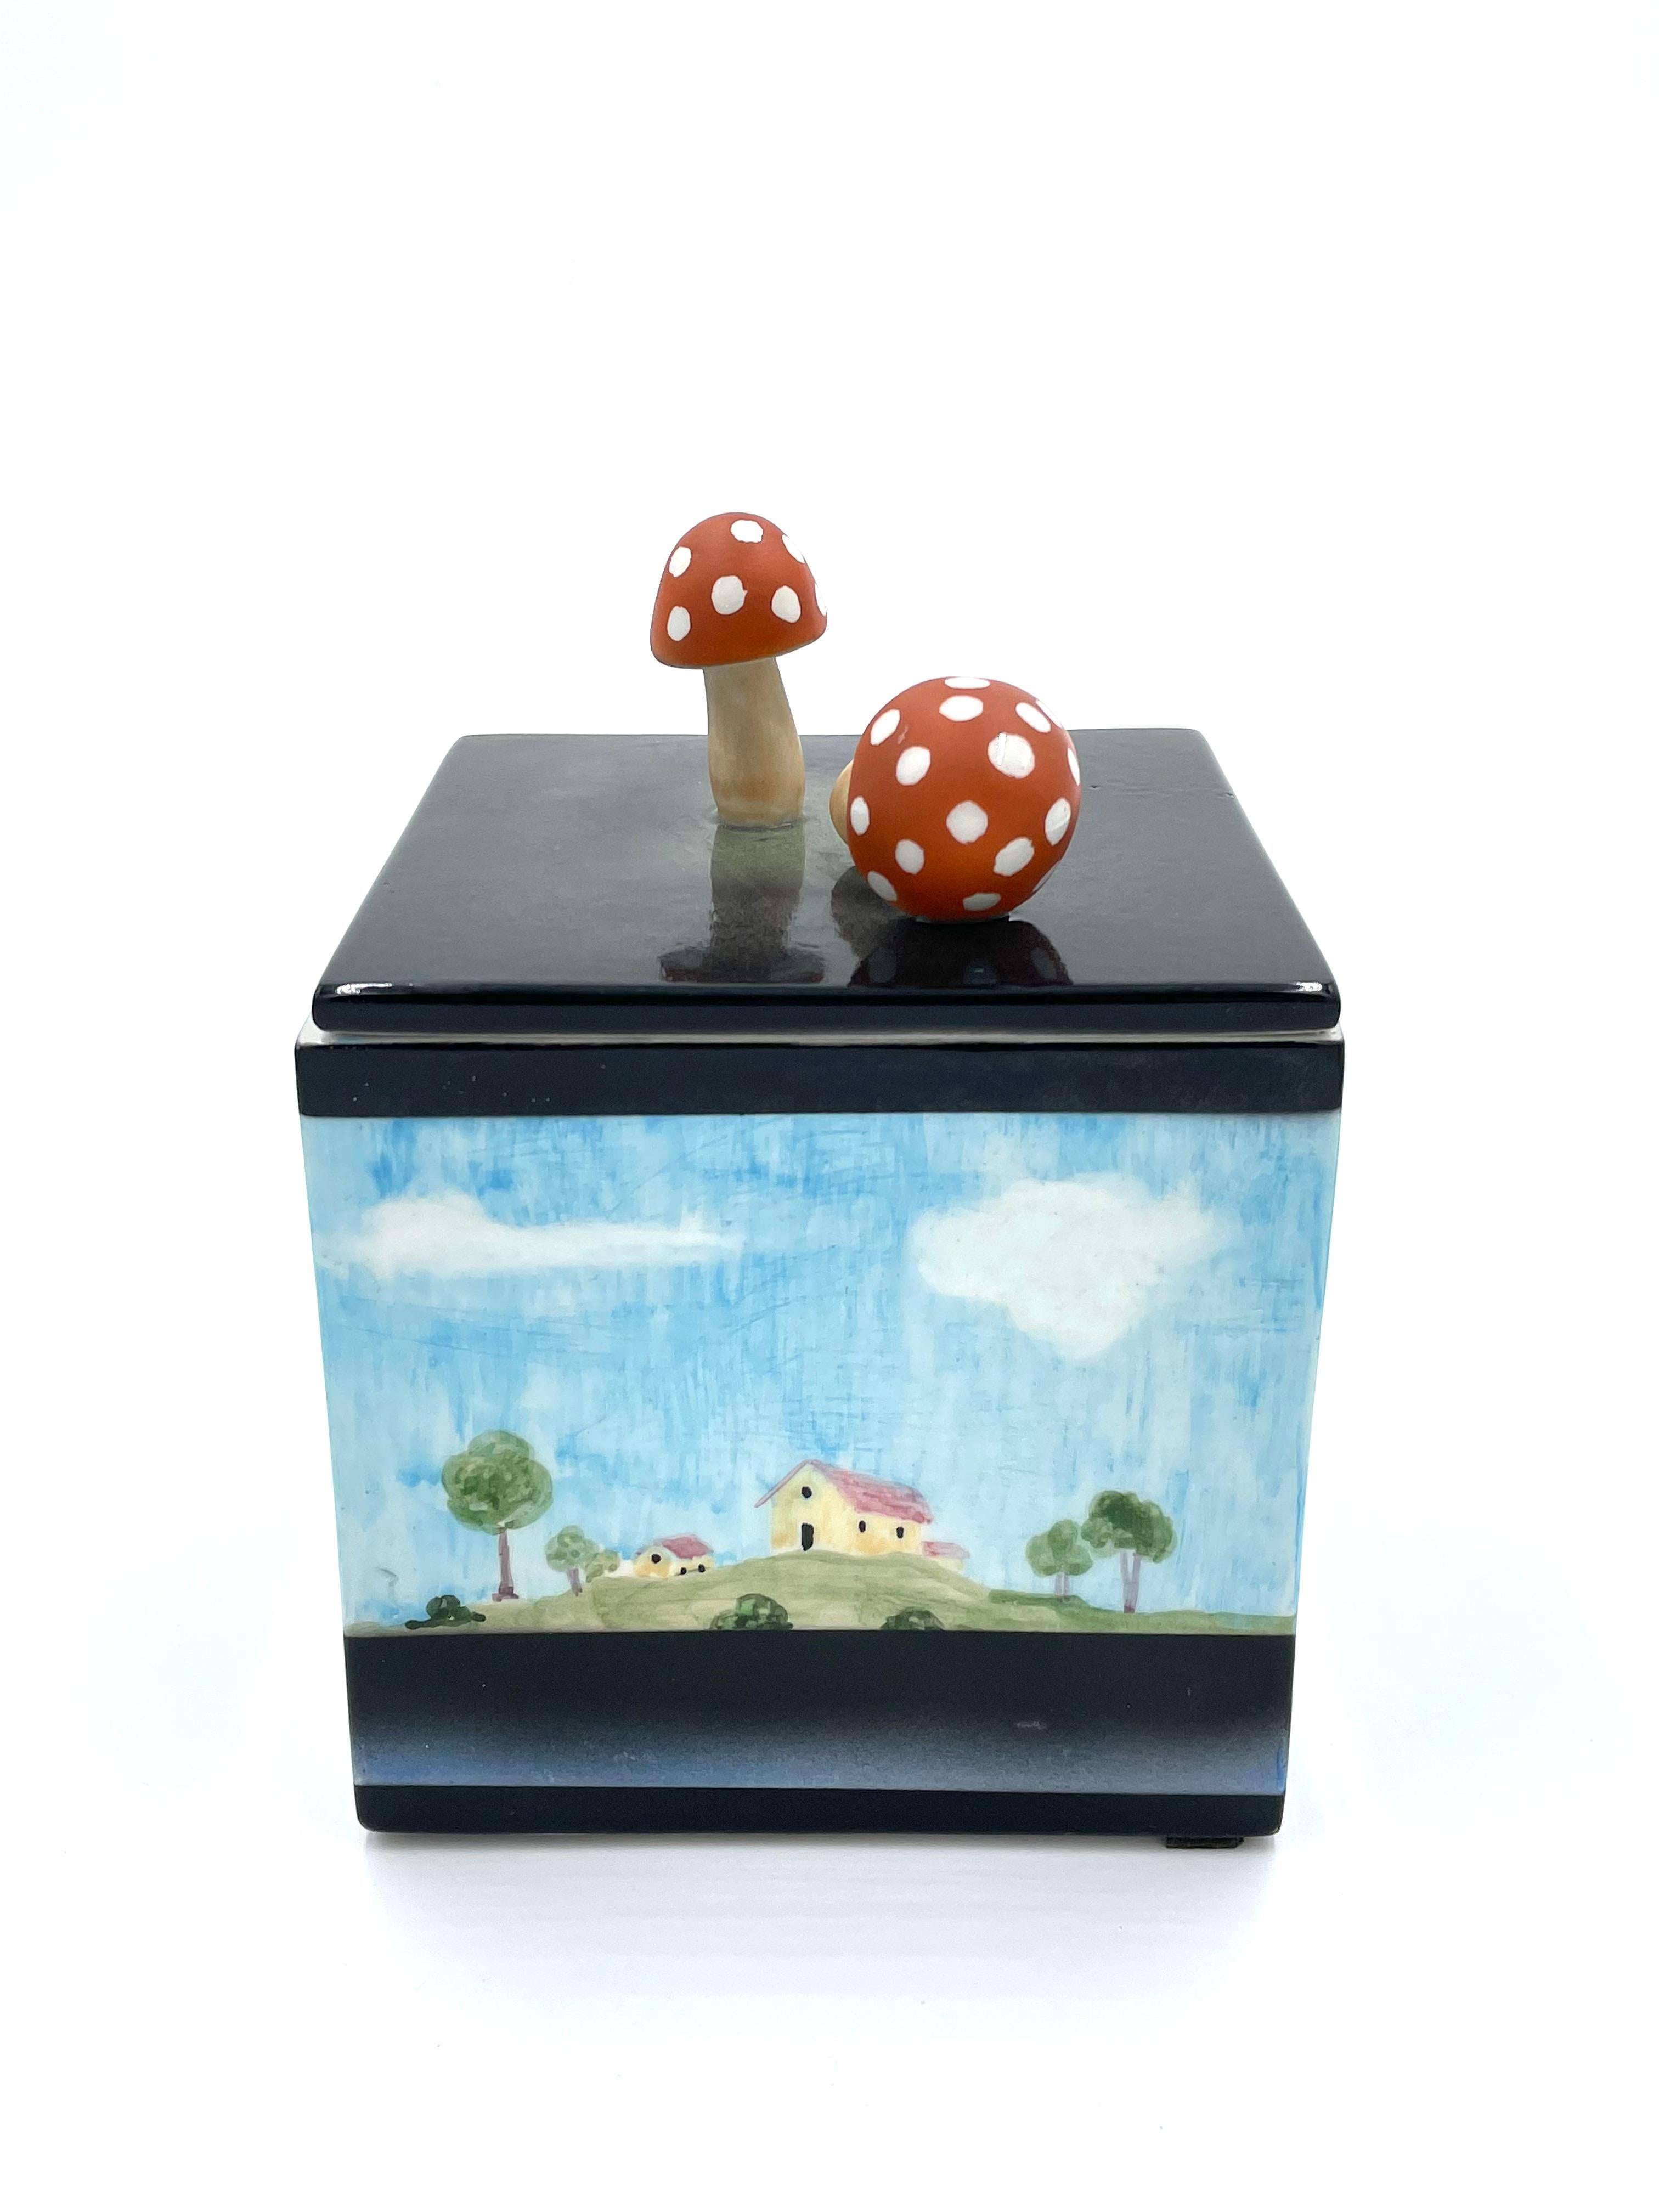 Boîte en céramique fabriquée par la manufacture Lenci de Turin, vers la fin des années 1950 et le début des années 1960.

Il s'agit d'une boîte de forme cubique dont le couvercle est muni d'un bouton figuratif représentant deux champignons. Les